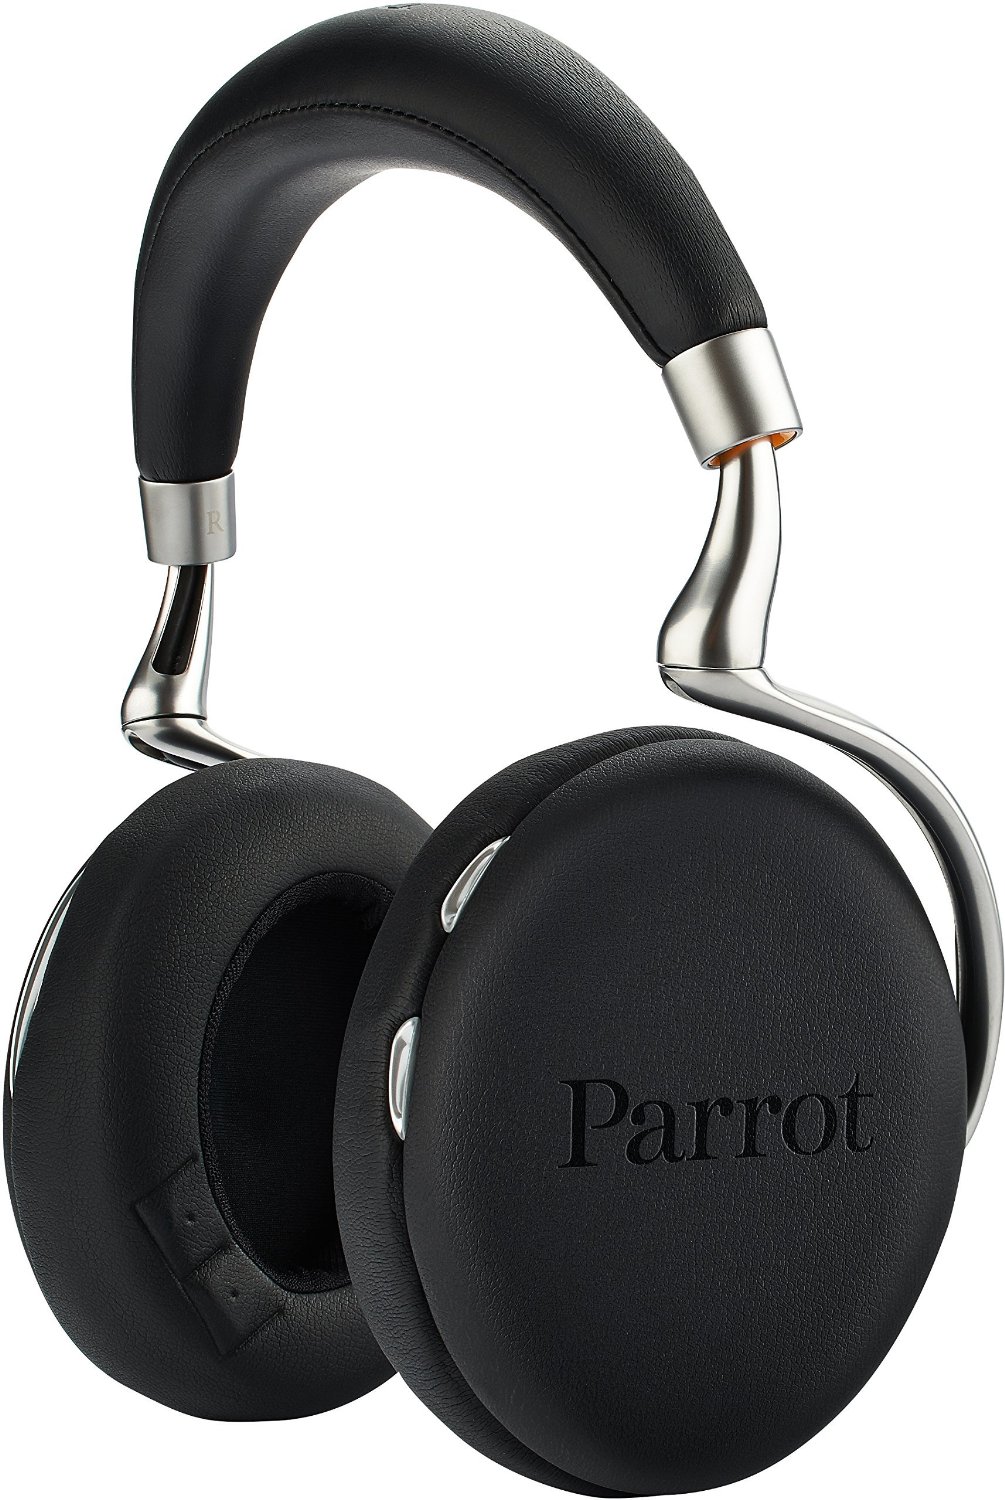 Parrot Zik 2.0, Bluetooth